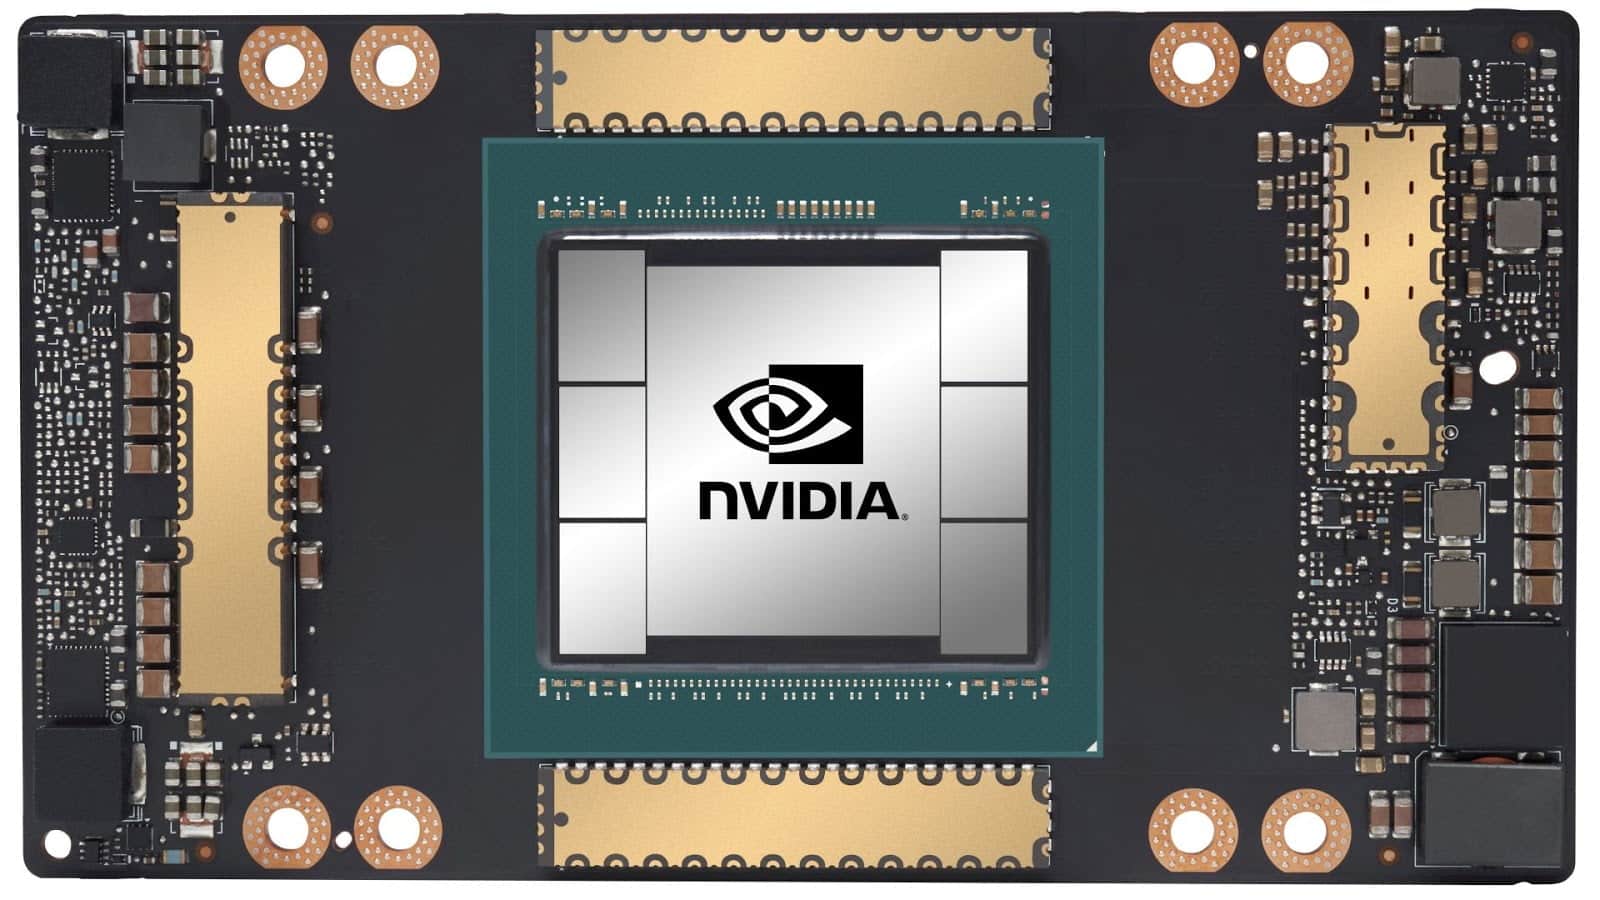 Nvidia a100: confira a nova gpu da nvidia | f16ad597 a100 front edit 19x10 1 | married games notícias | nvidia a100